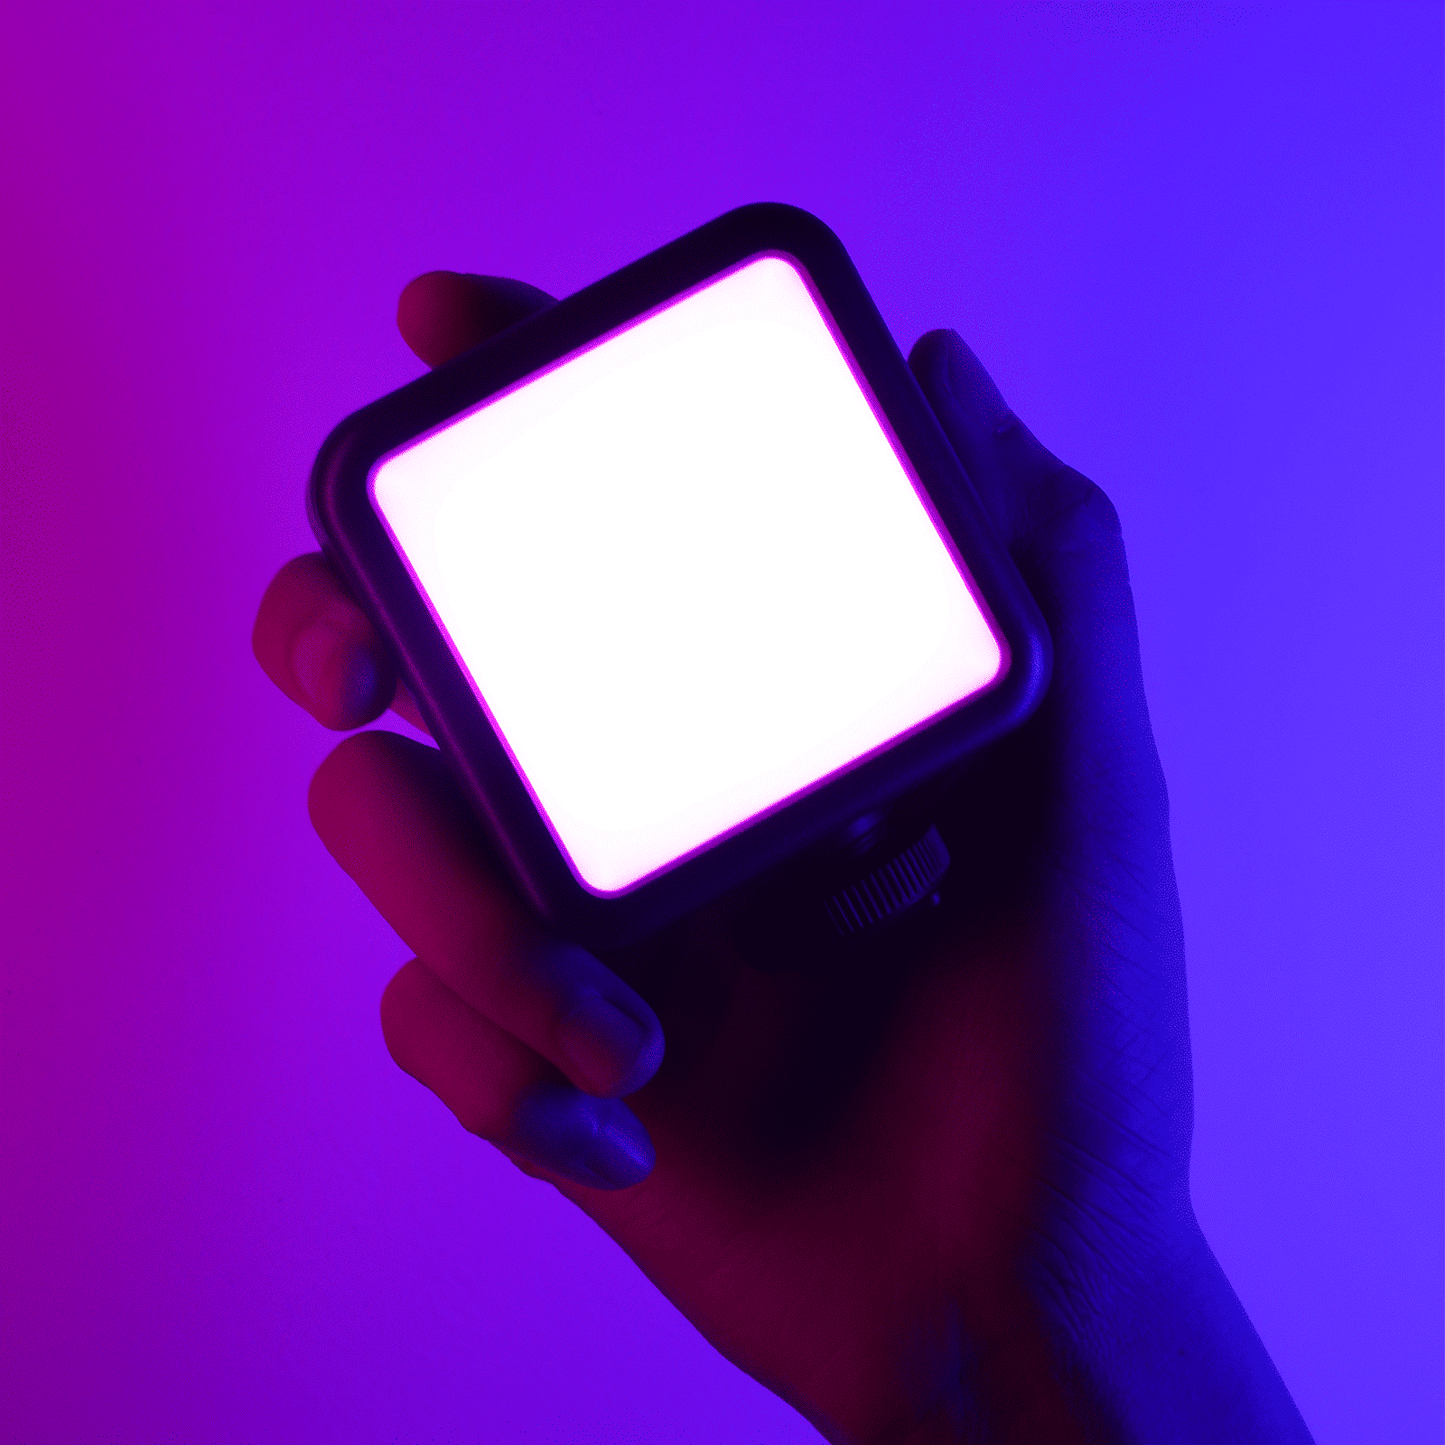 Ulanzi VL49 RGB Multi Color LED-videolamp